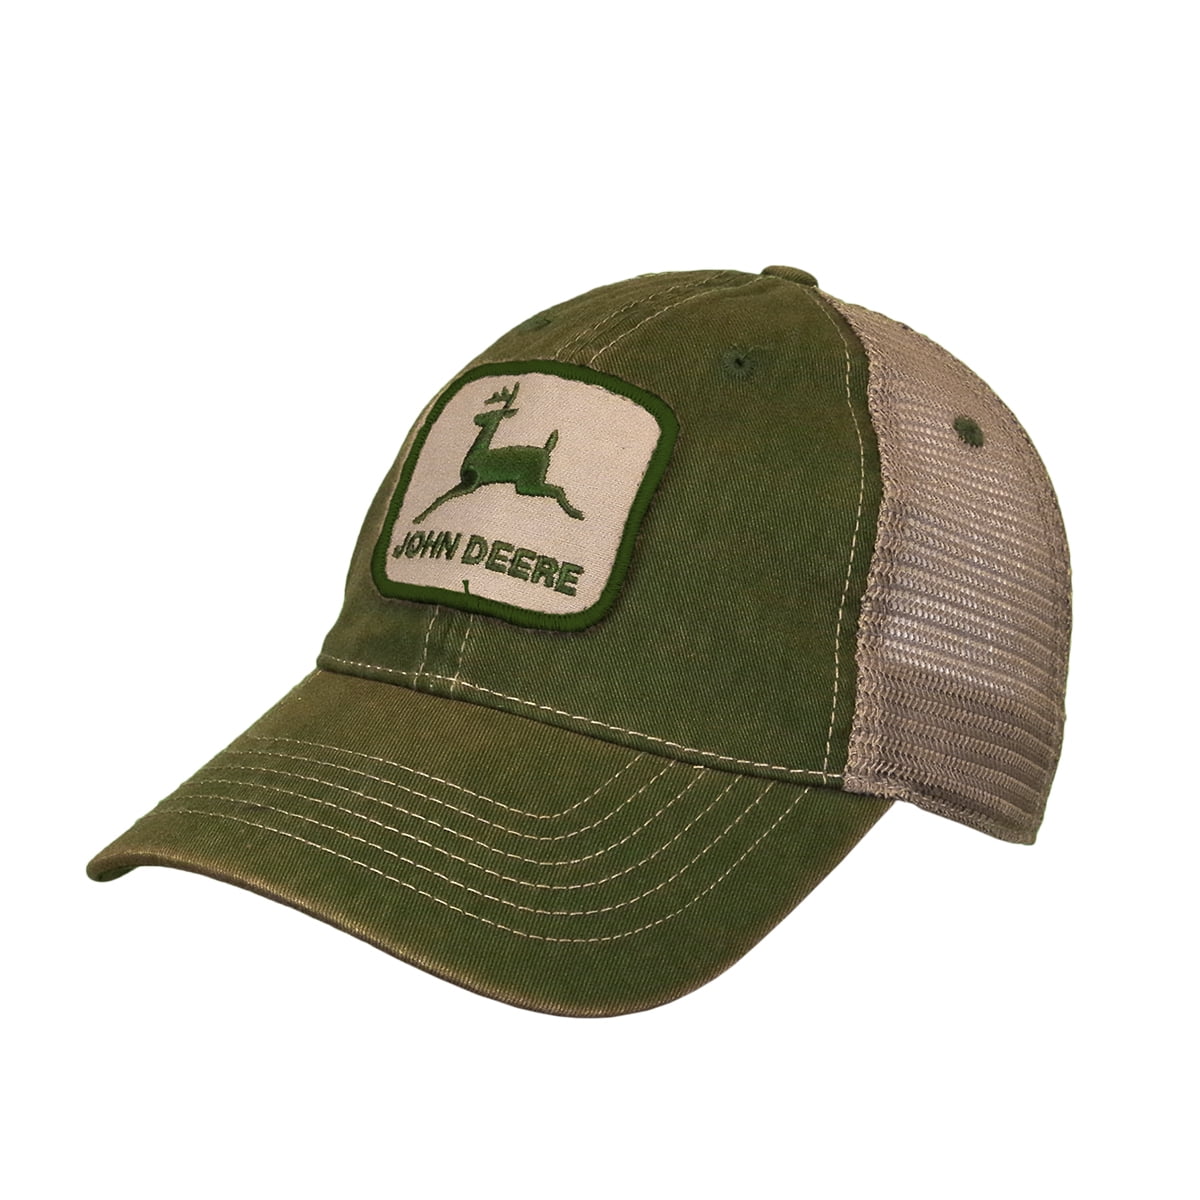 John Deere Tractors Men's Unstructured Deer Logo Hat, Green and Ivory - Walmart.com